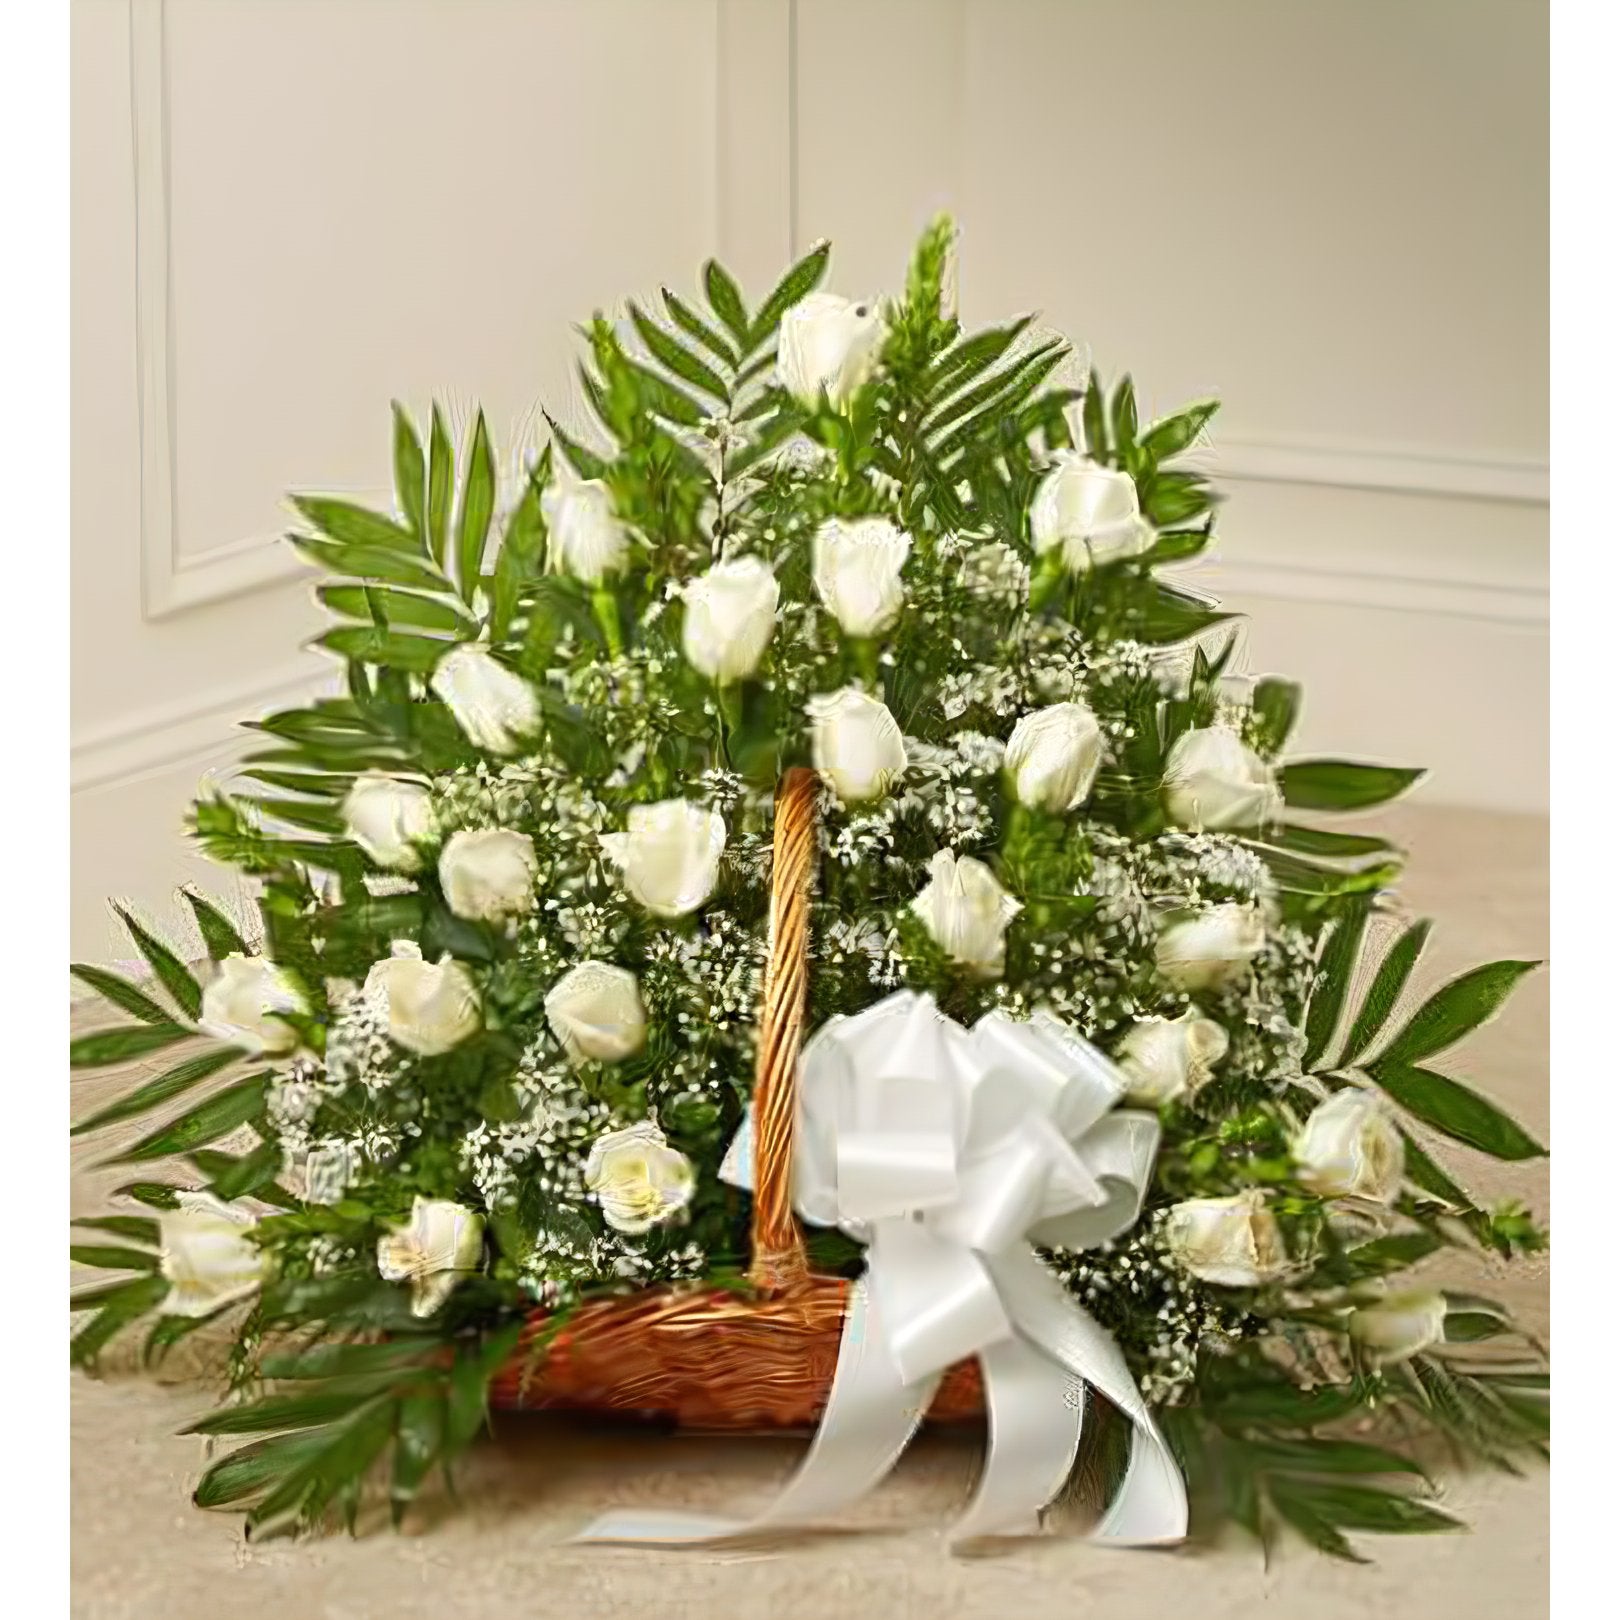 Sincerest Sympathies Fireside Basket - White - Floral Arrangement - Flower Delivery Brooklyn